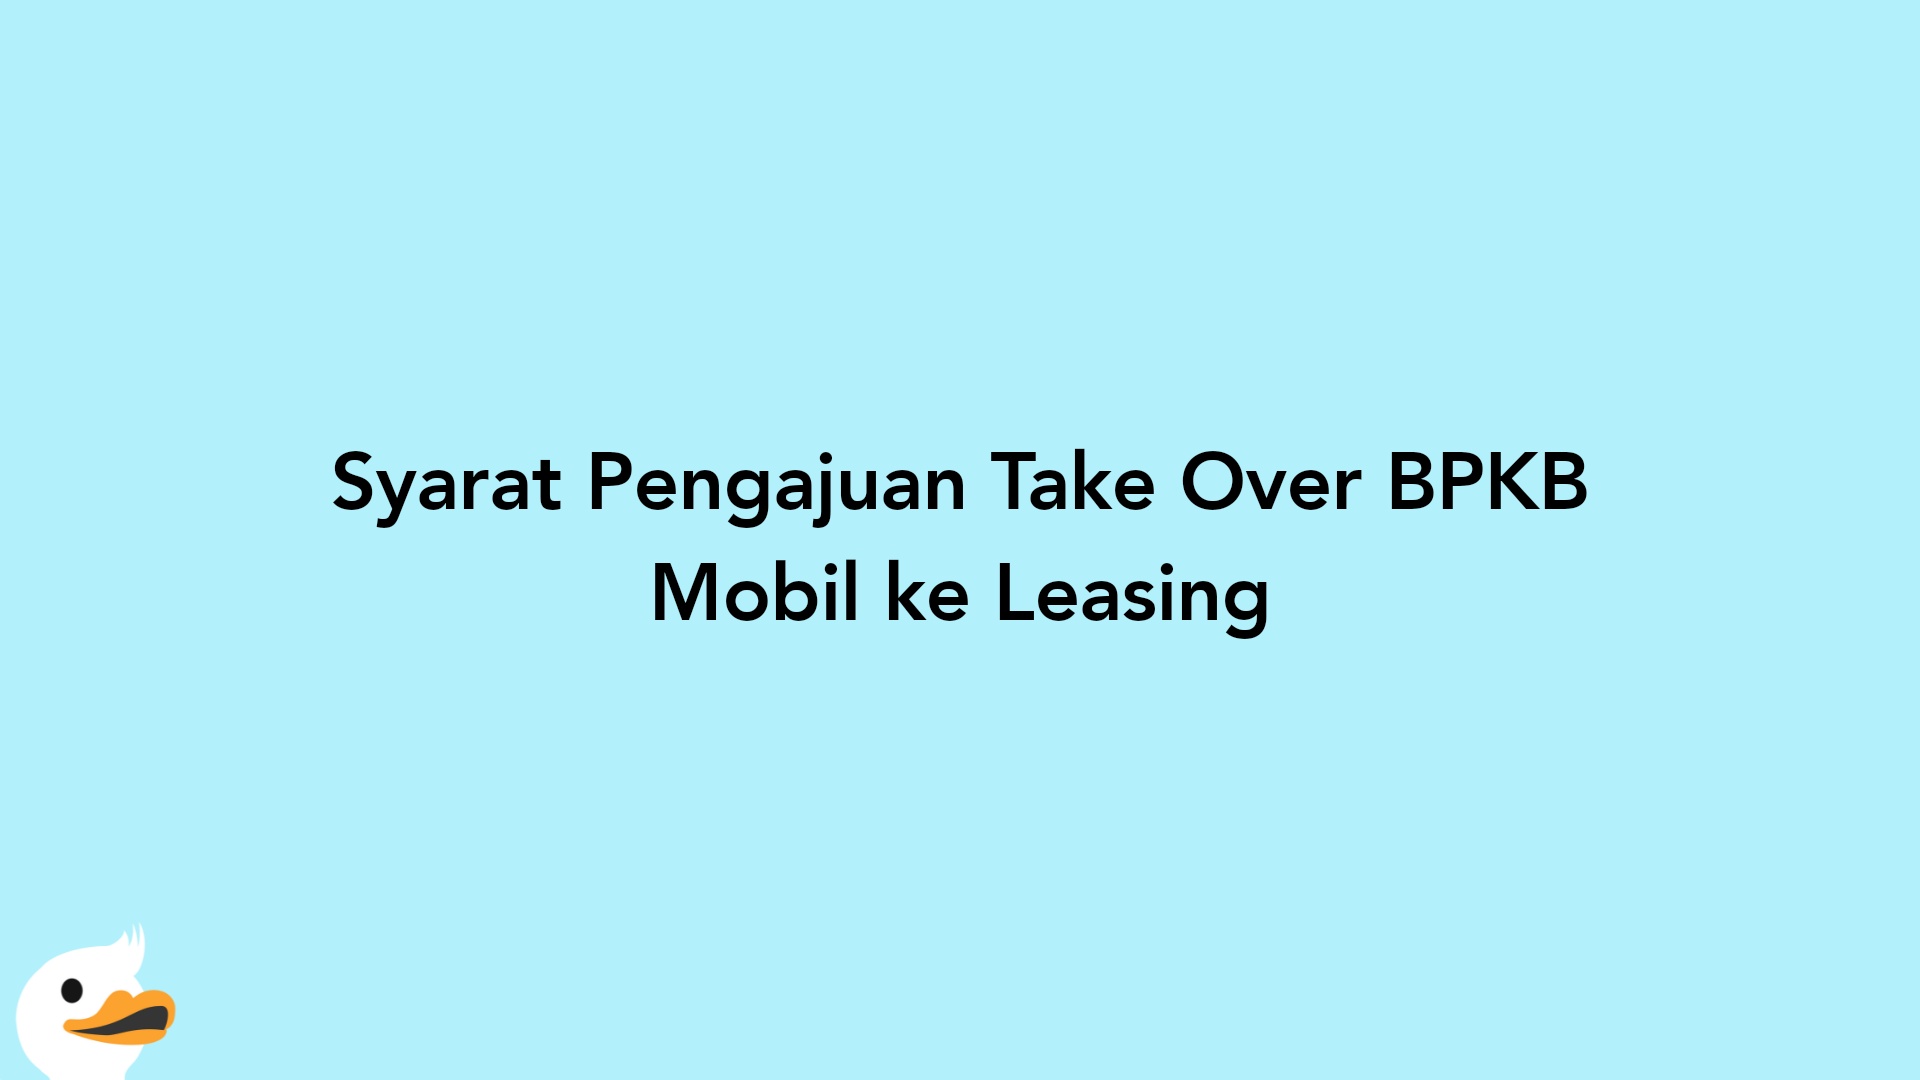 Syarat Pengajuan Take Over BPKB Mobil ke Leasing